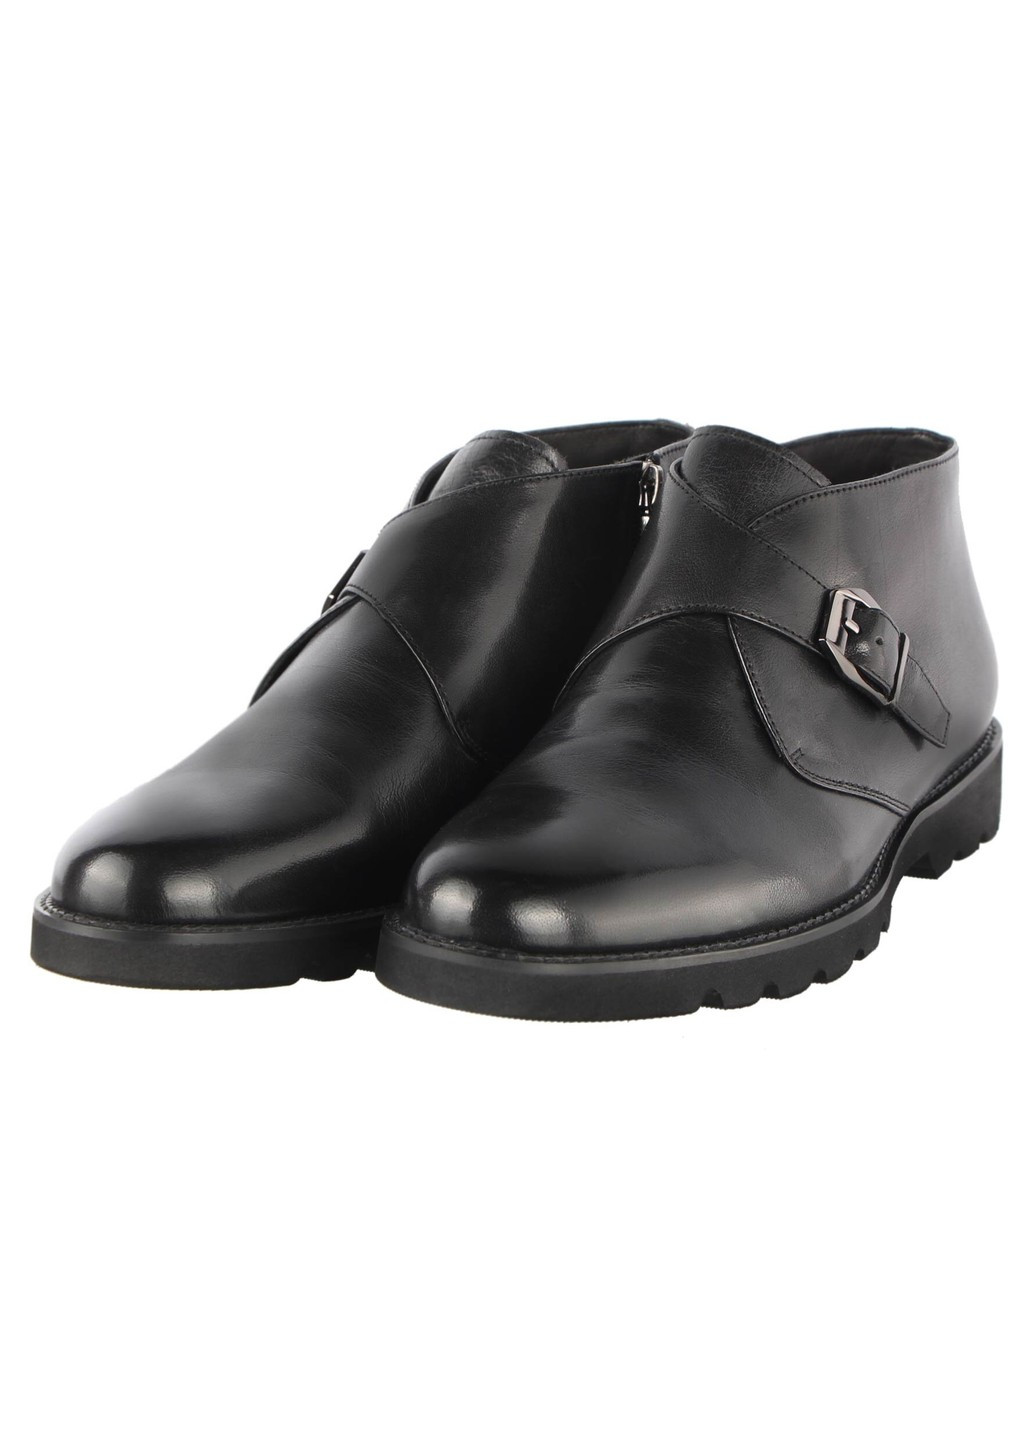 Черные зимние мужские зимние ботинки классические 19743 Lido Marinozzi